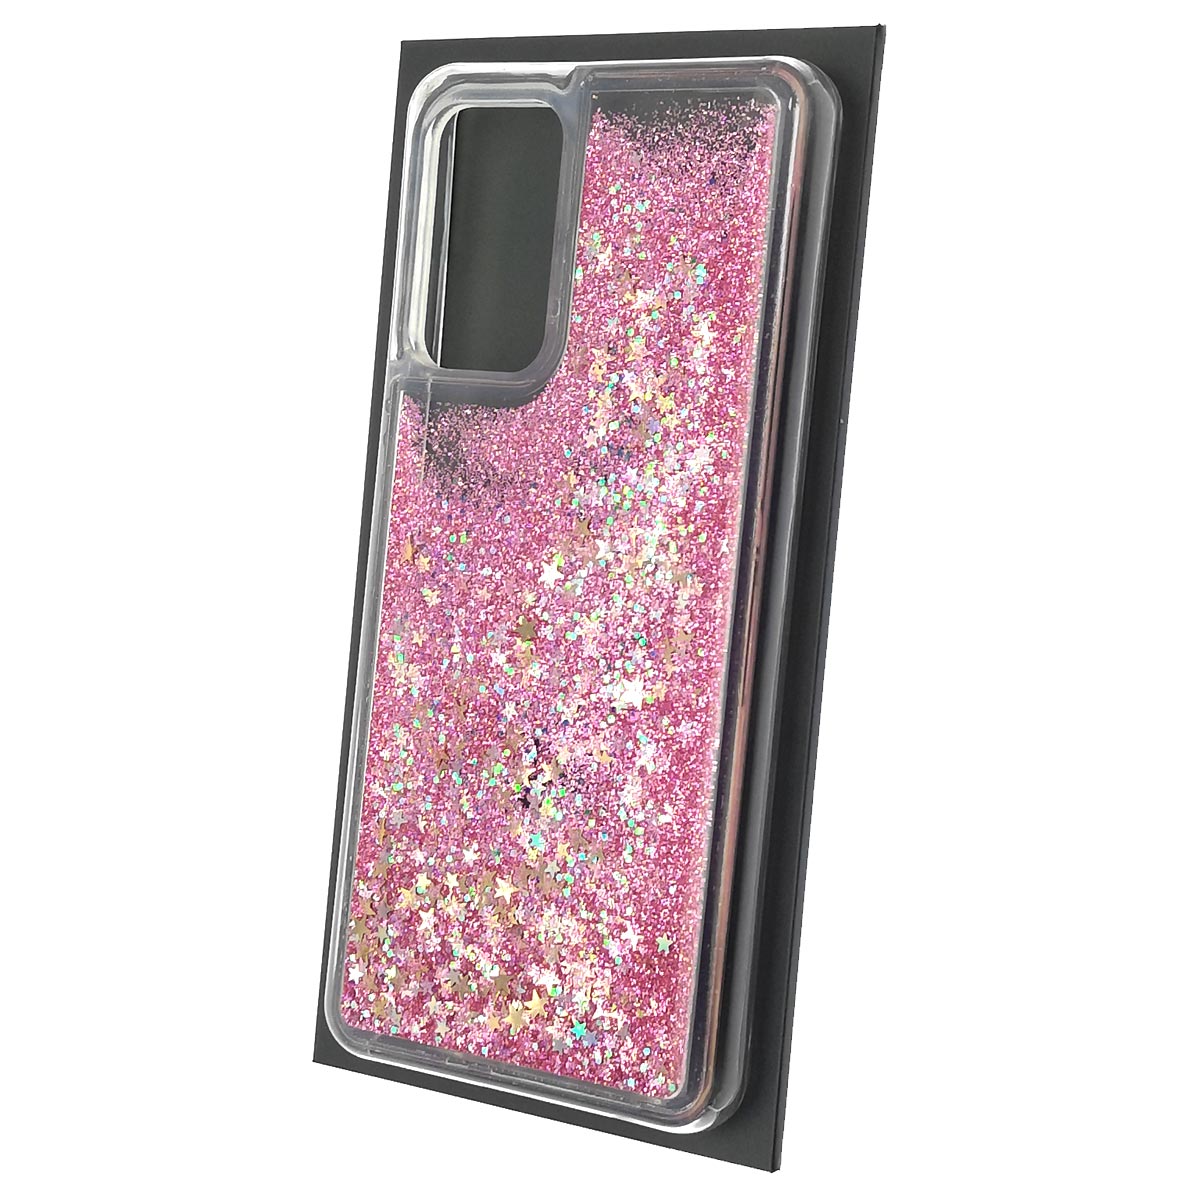 Чехол накладка для SAMSUNG Galaxy A52 (SM-A525F), силикон, переливашка, блестки, цвет розовый